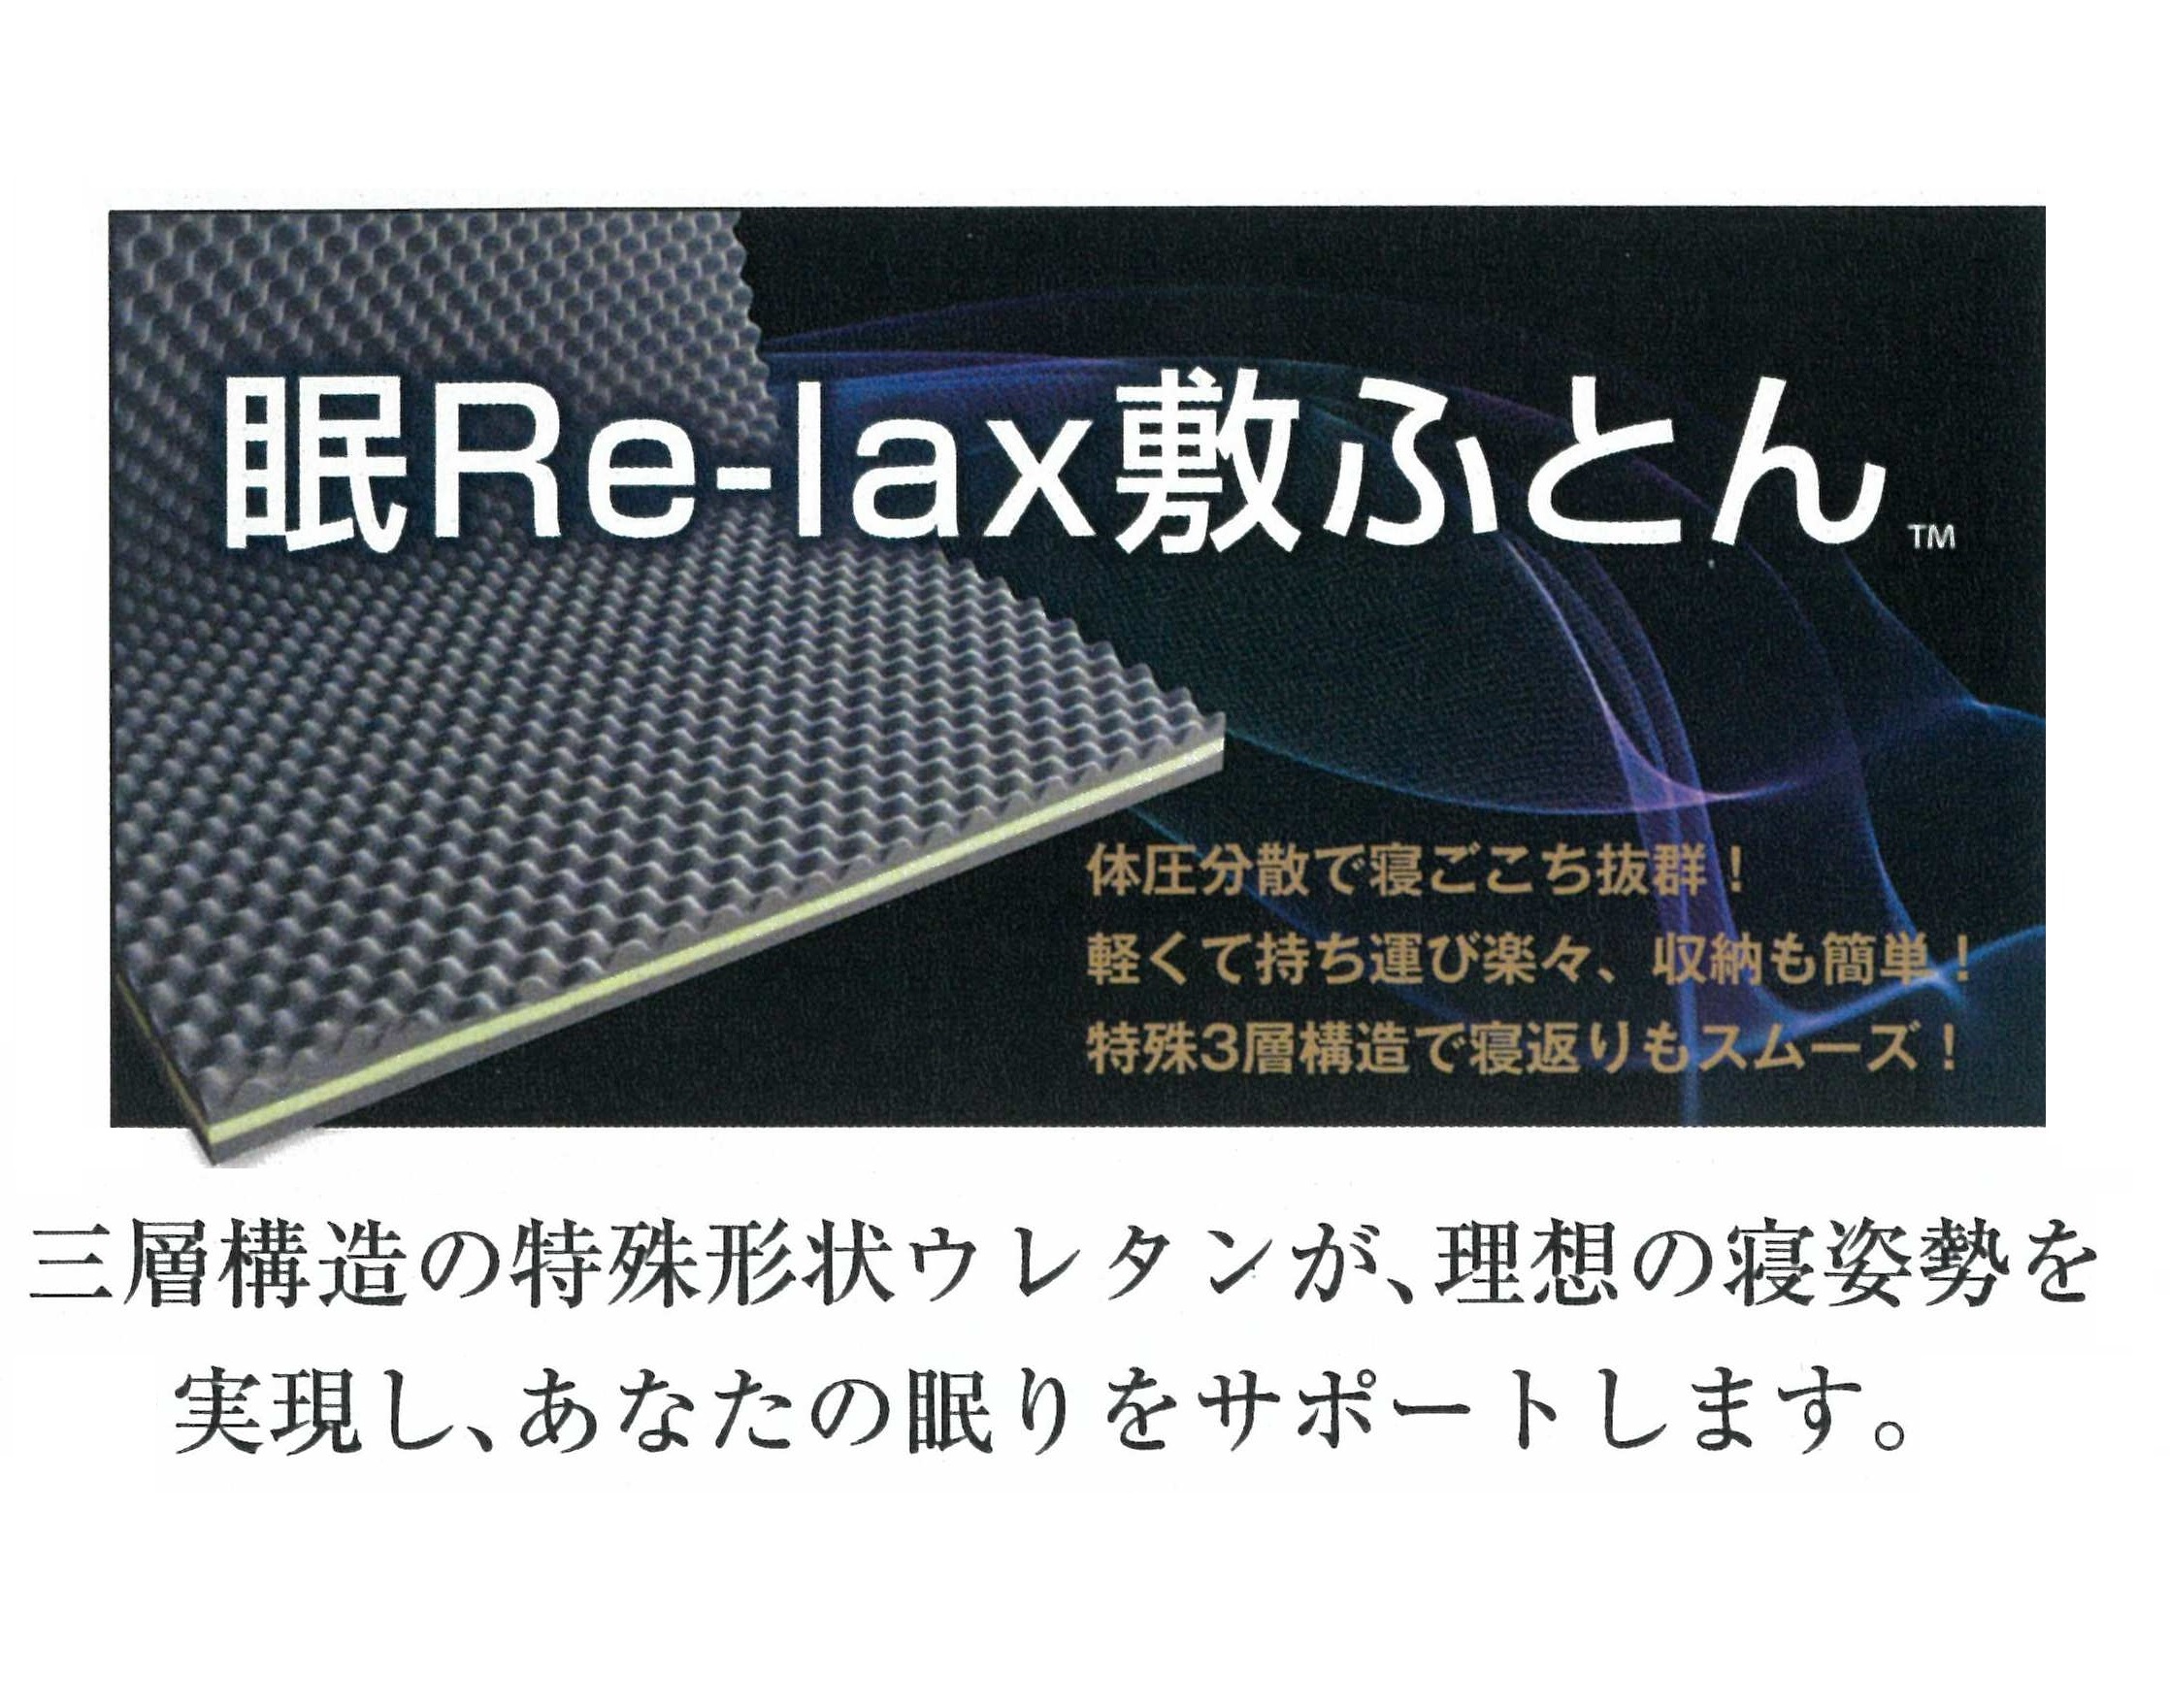 眠Re-lax敷ふとん™「Cocode neru™」DX9